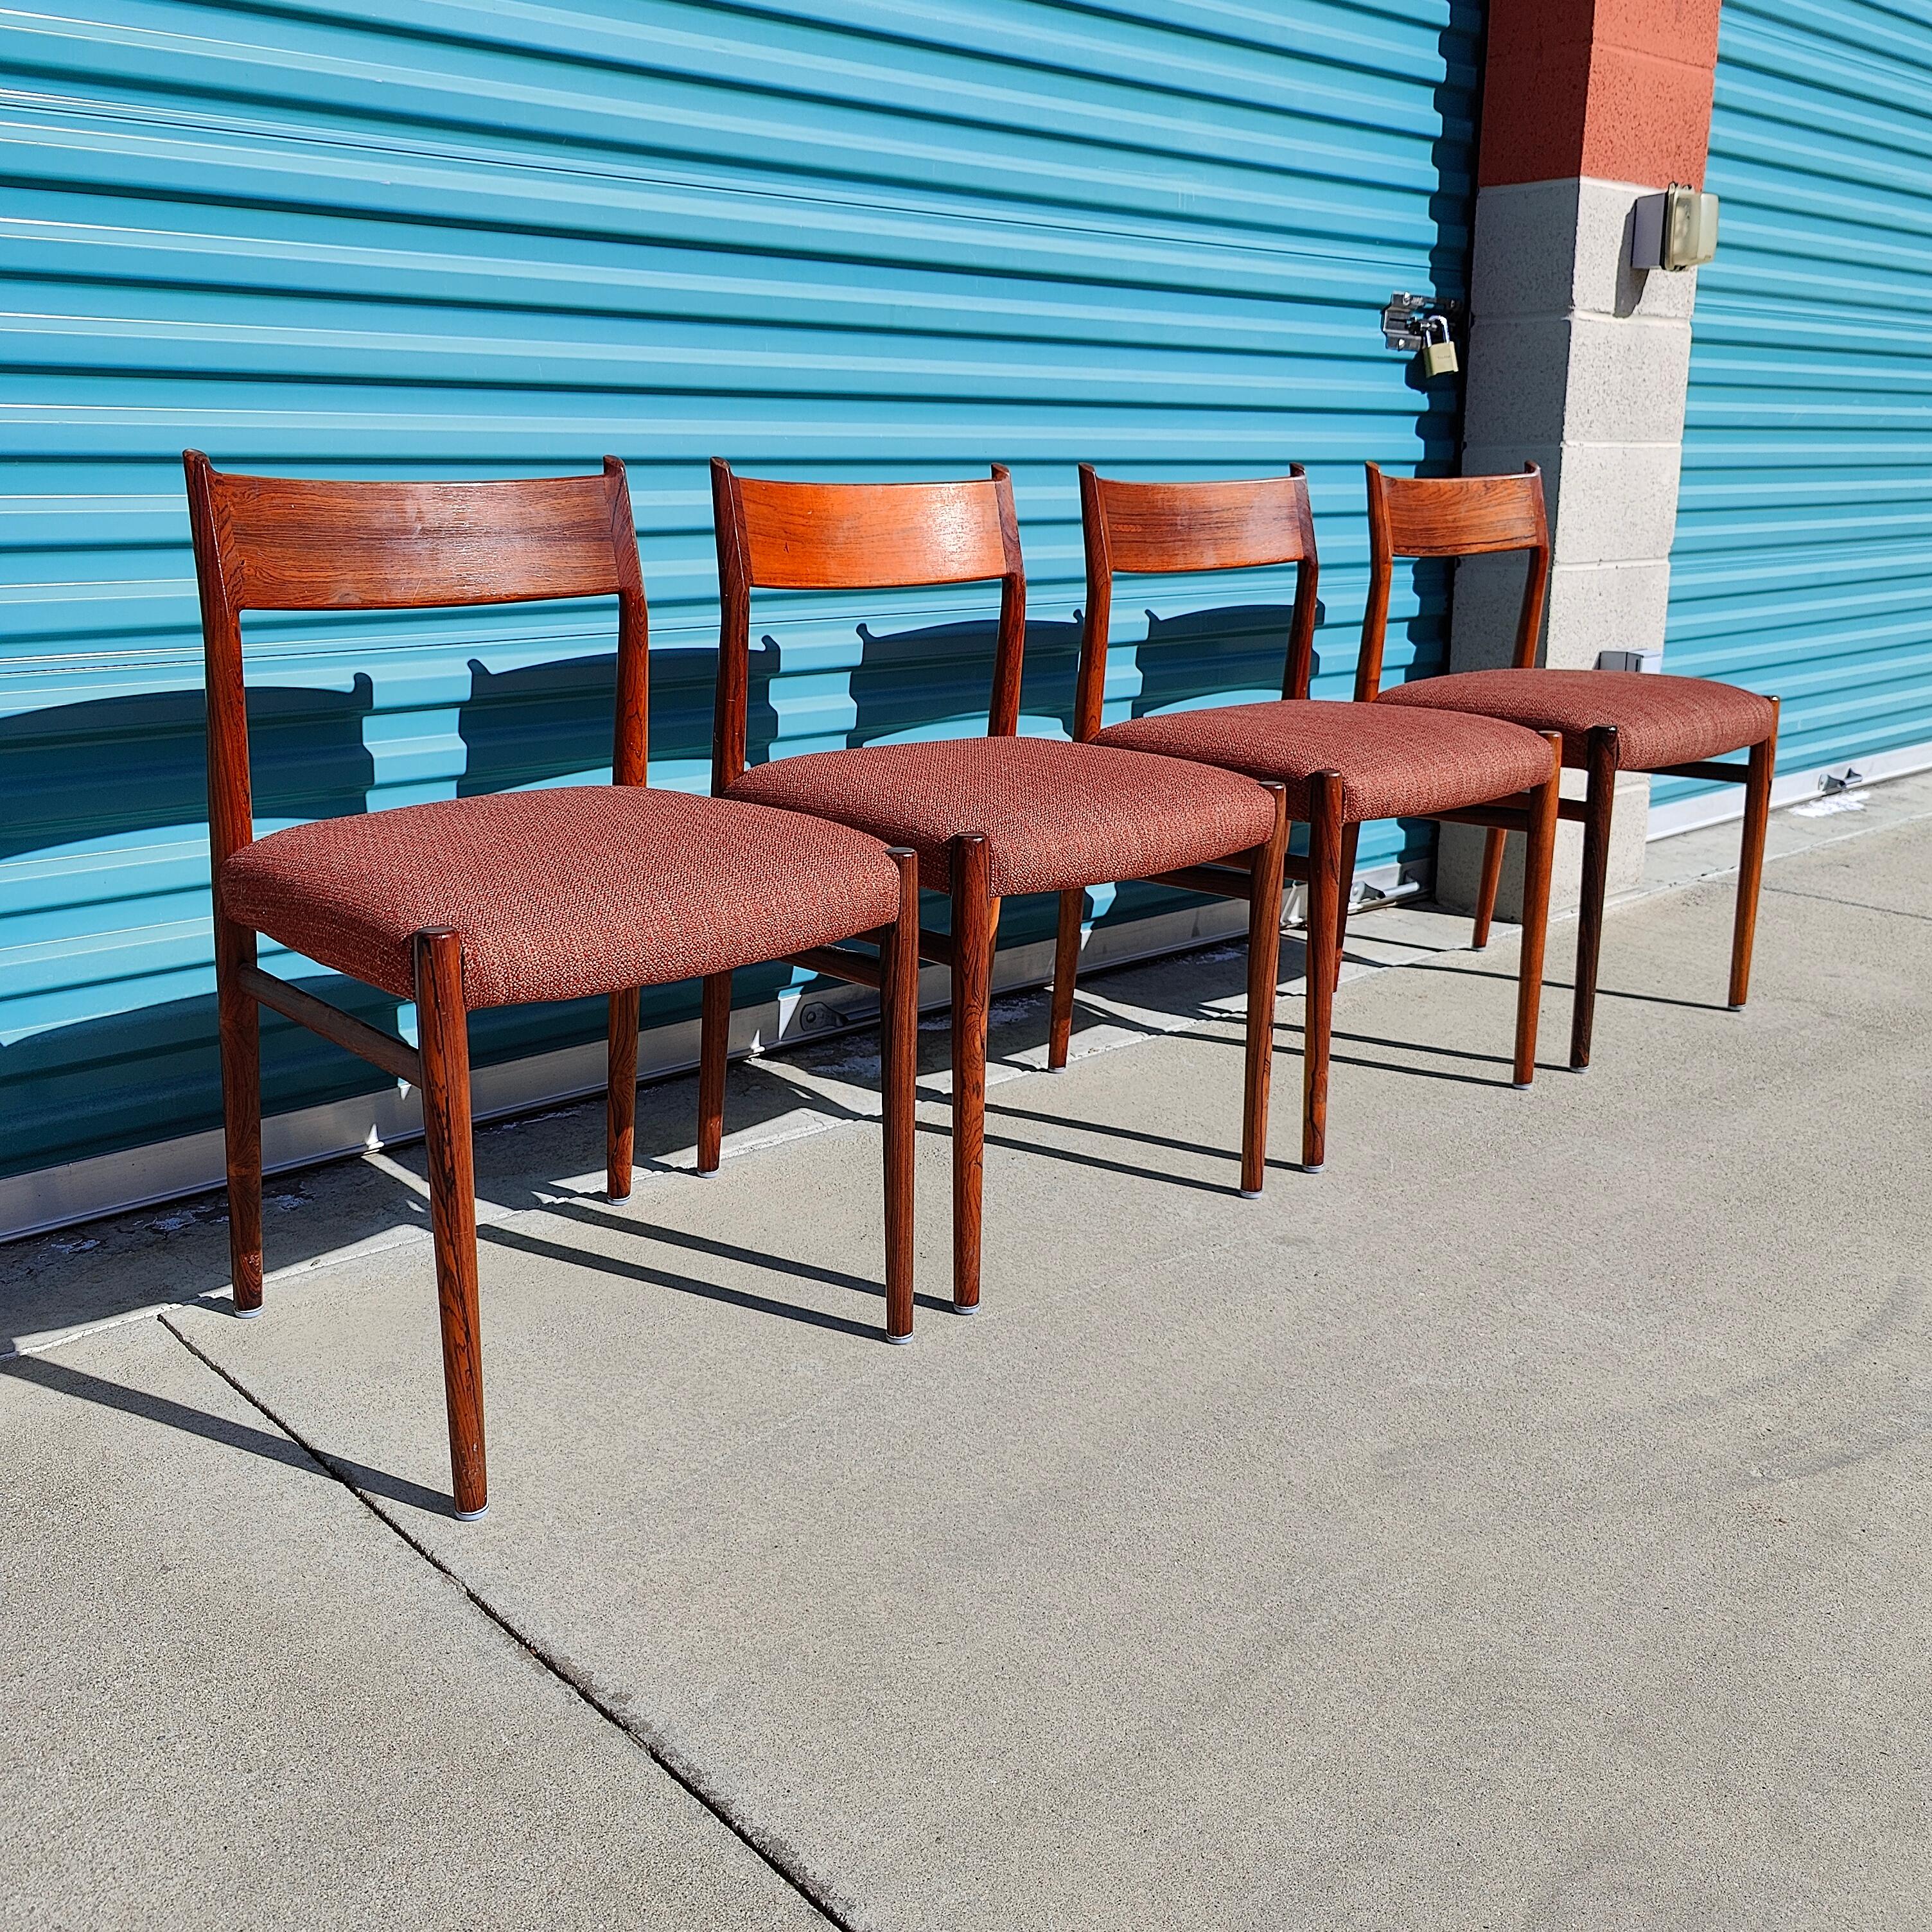 Un ensemble de quatre chaises de salle à manger danoises conçues par Arne Vodder pour Sibast est désormais disponible. Ces beautés sont fabriquées en bois de rose massif et présentent un grain étonnant avec un tissu original. Les chaises sont en